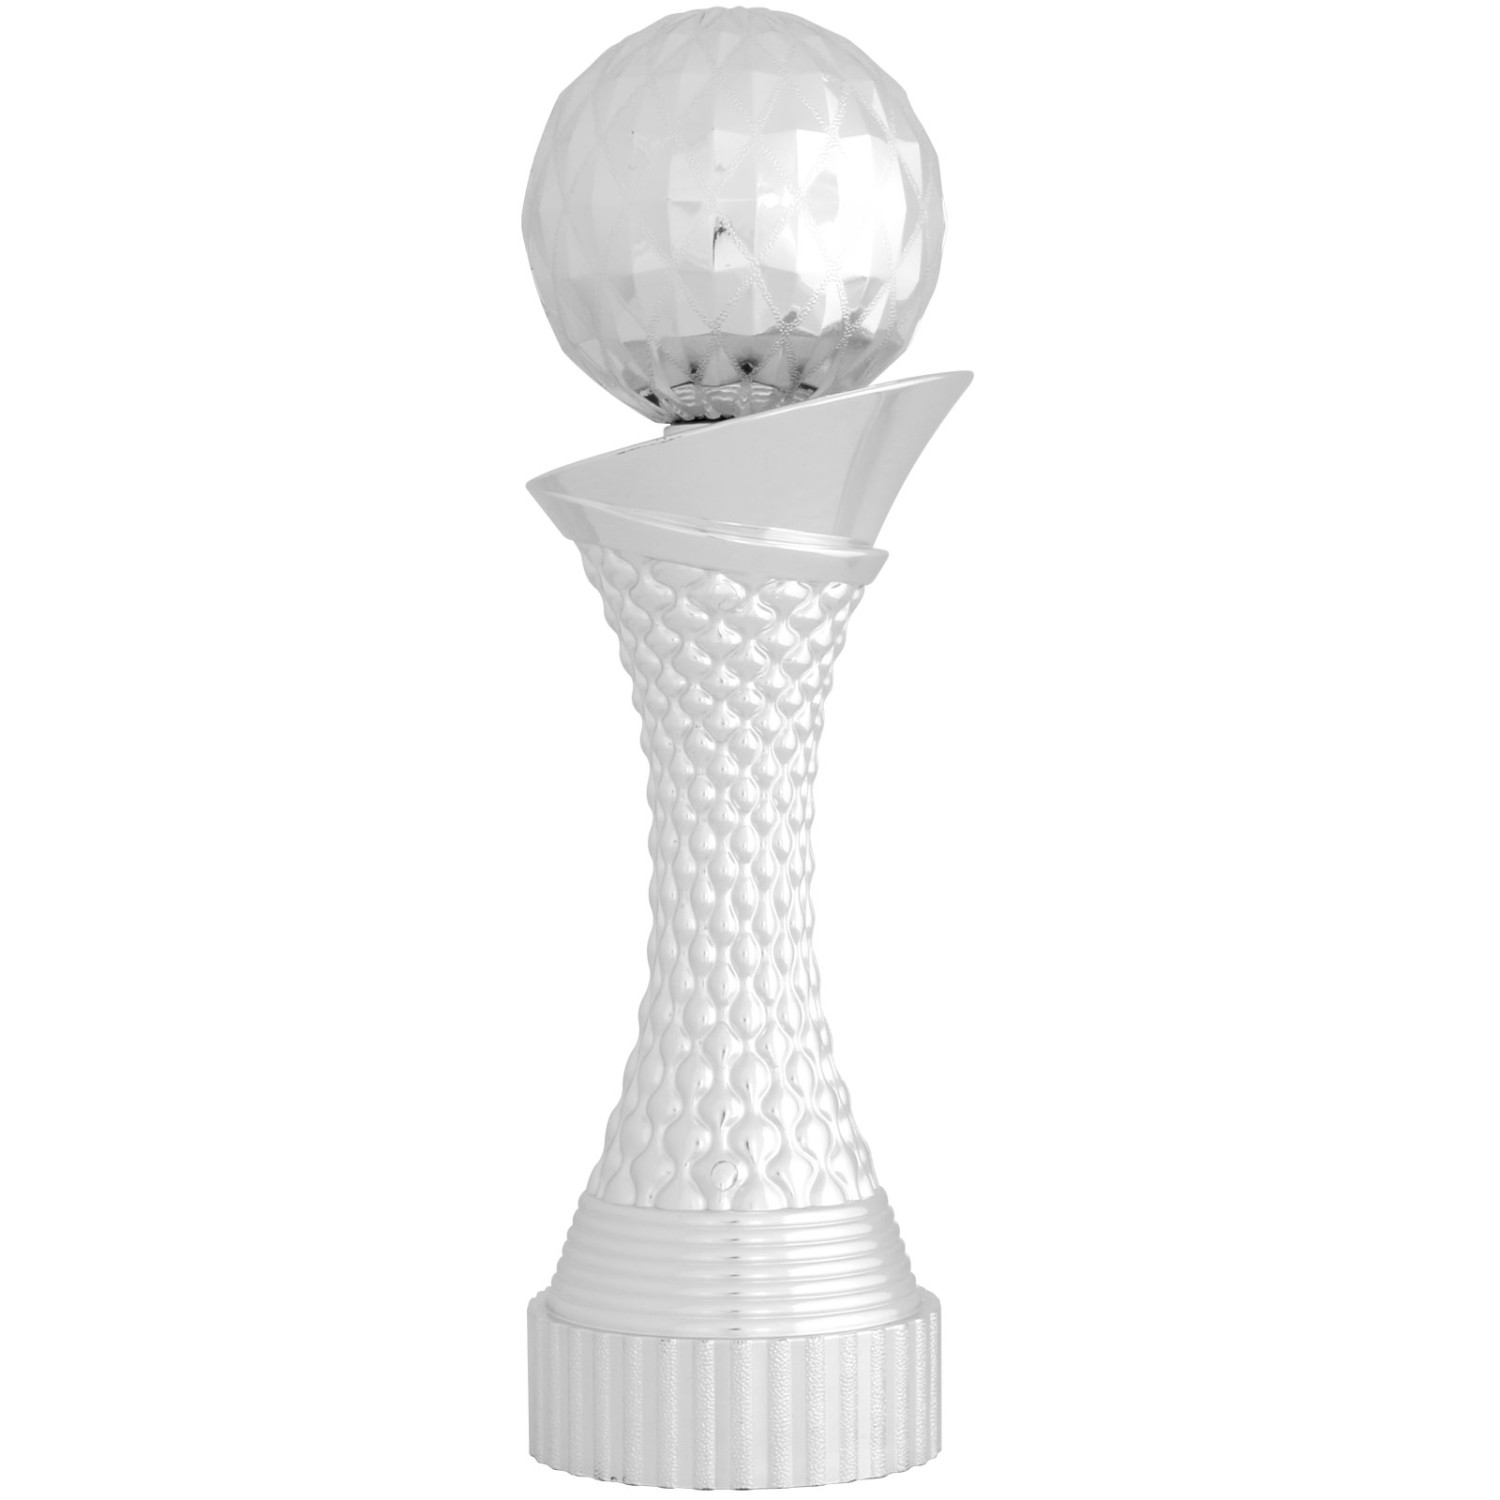 1. Foto Tennis Pokal AVORD Trophäe silber mit Gravur (Größe: L 27cm hoch)